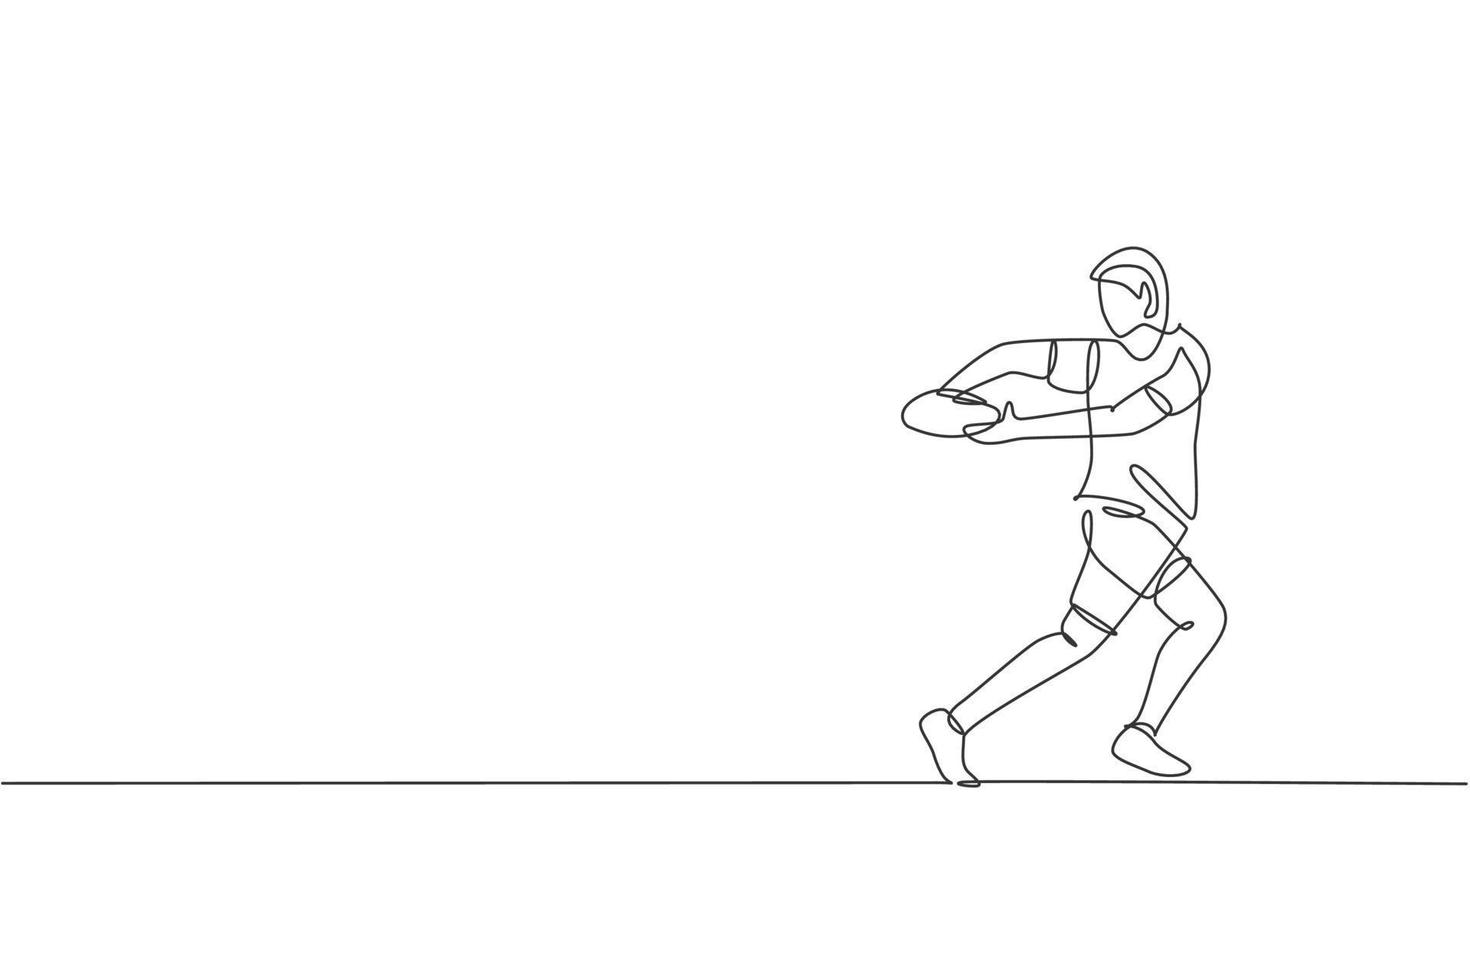 un dibujo de línea continua de un joven jugador de rugby masculino atrapa la pelota. concepto de deporte agresivo competitivo. ilustración de vector de diseño de dibujo de línea única dinámica para medios de promoción de torneos de rugby